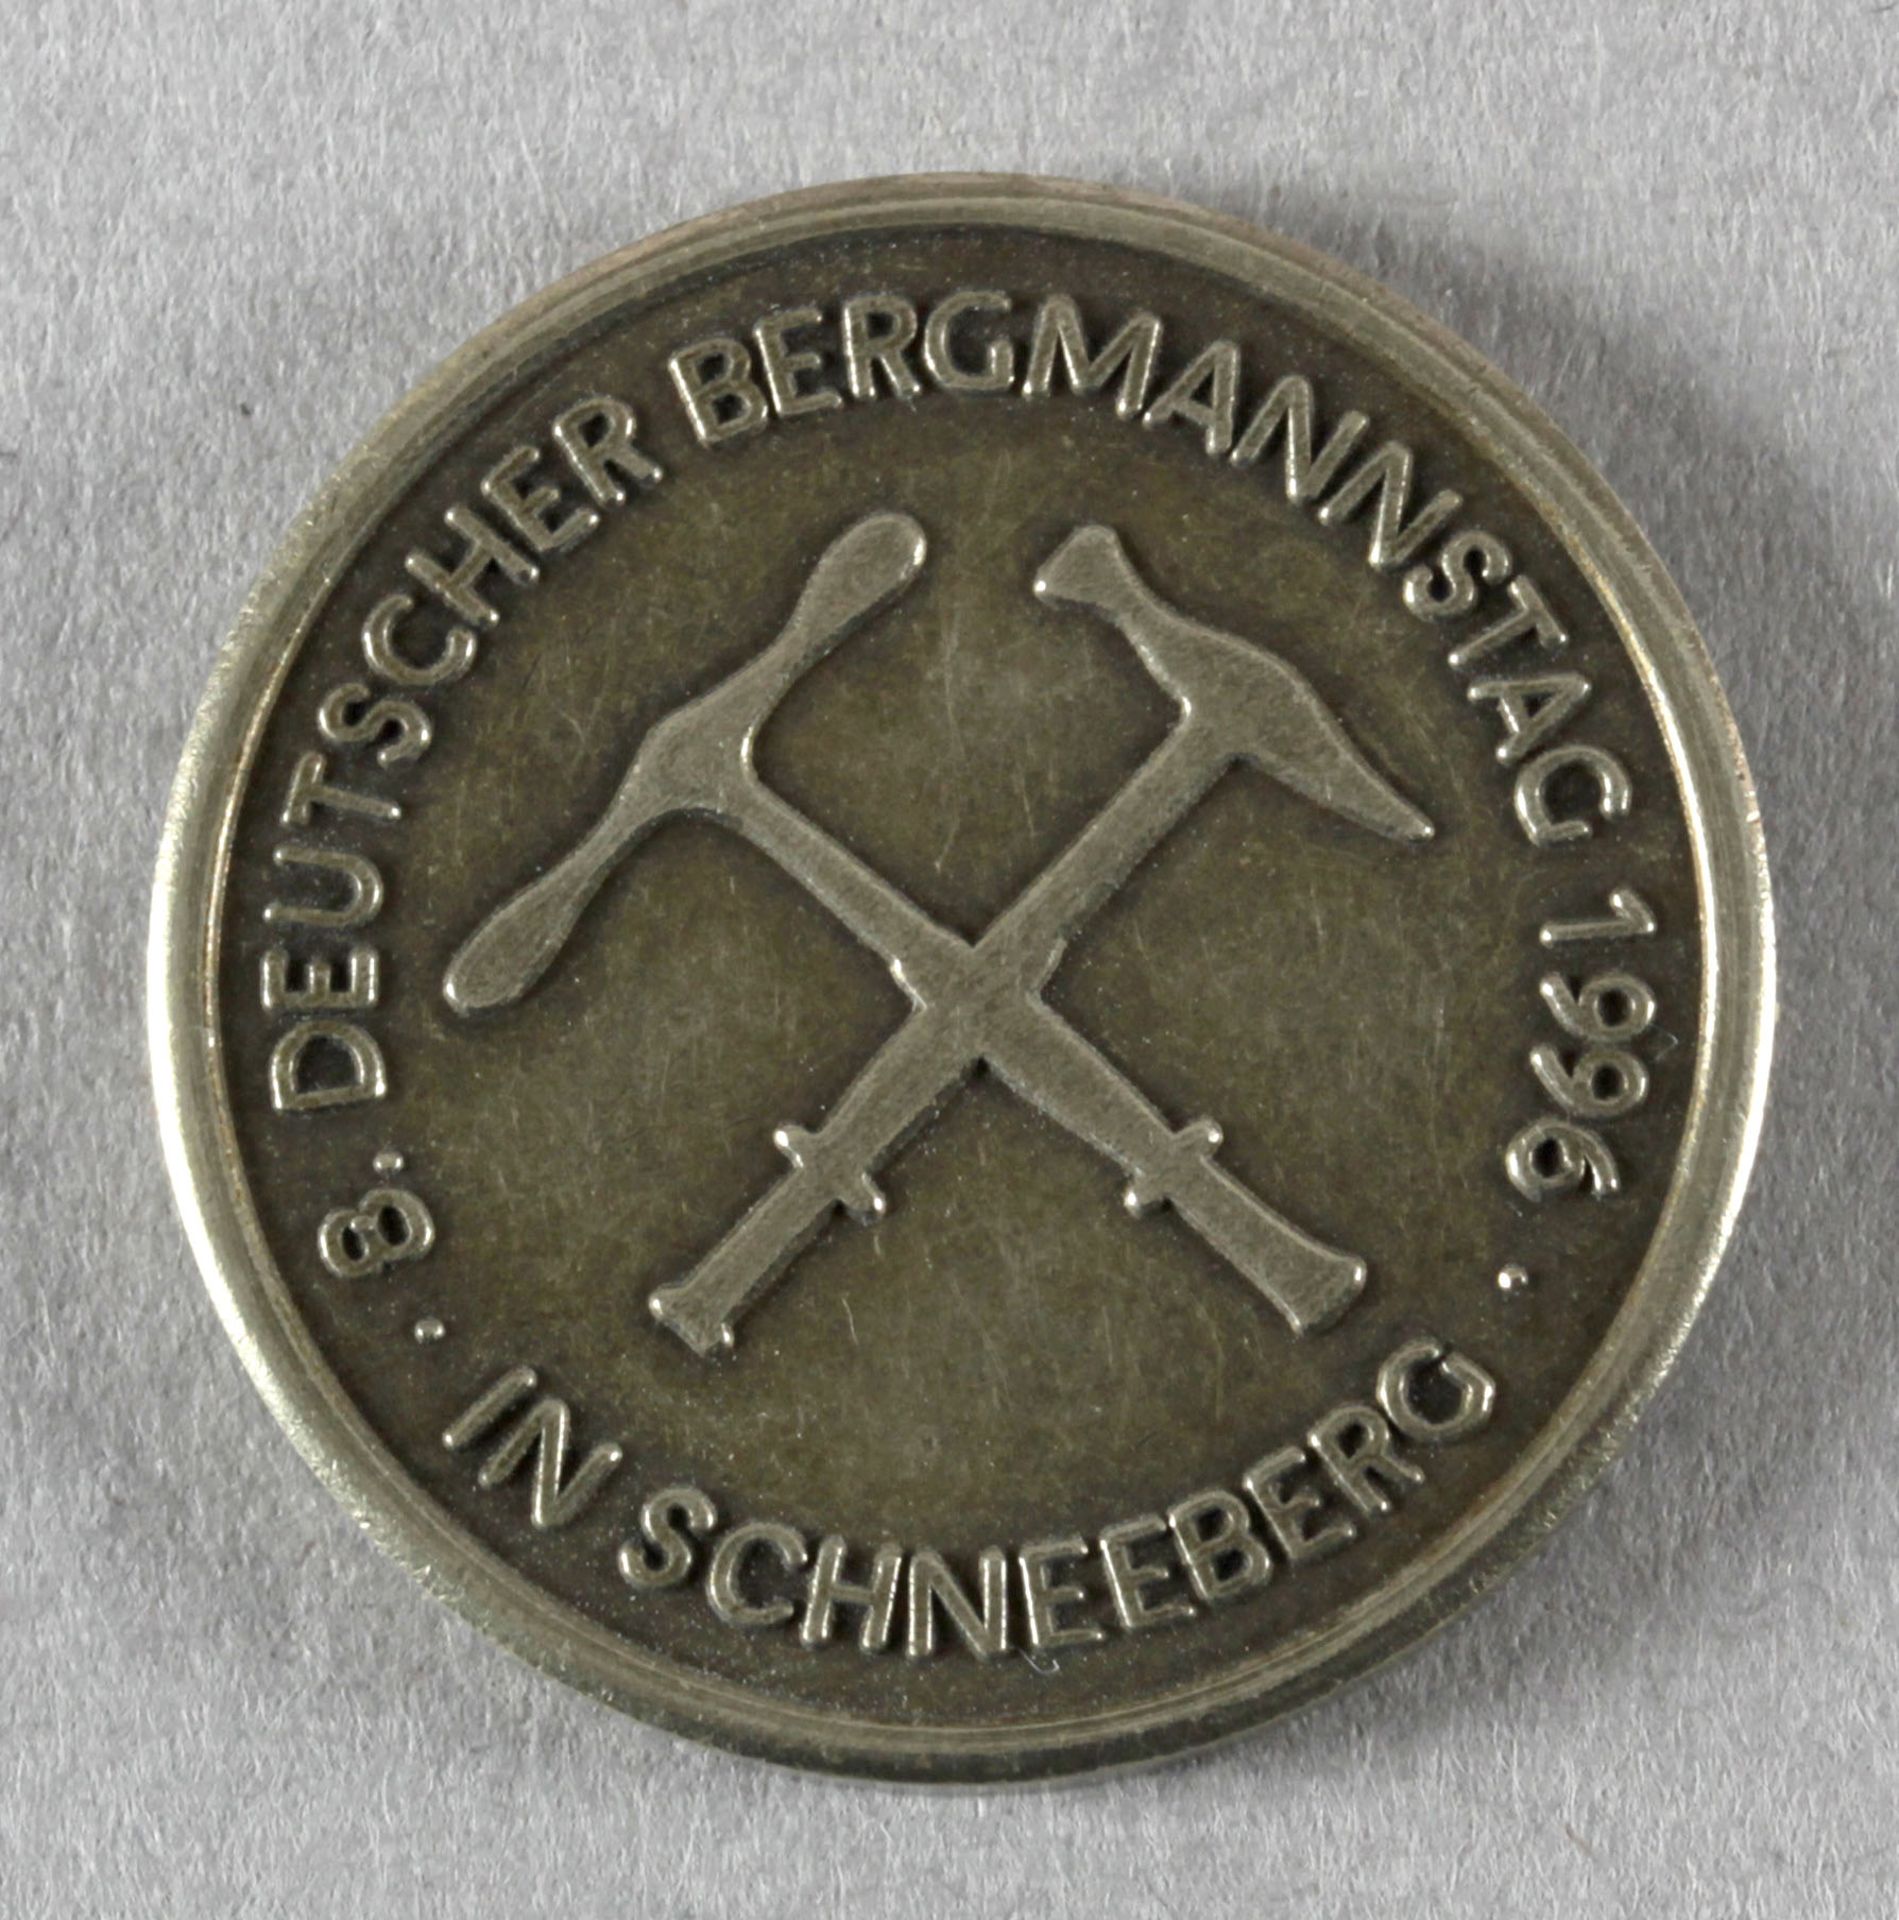 8. Deutscher Bergmannstag 1996 in Schneeberg - Image 2 of 2